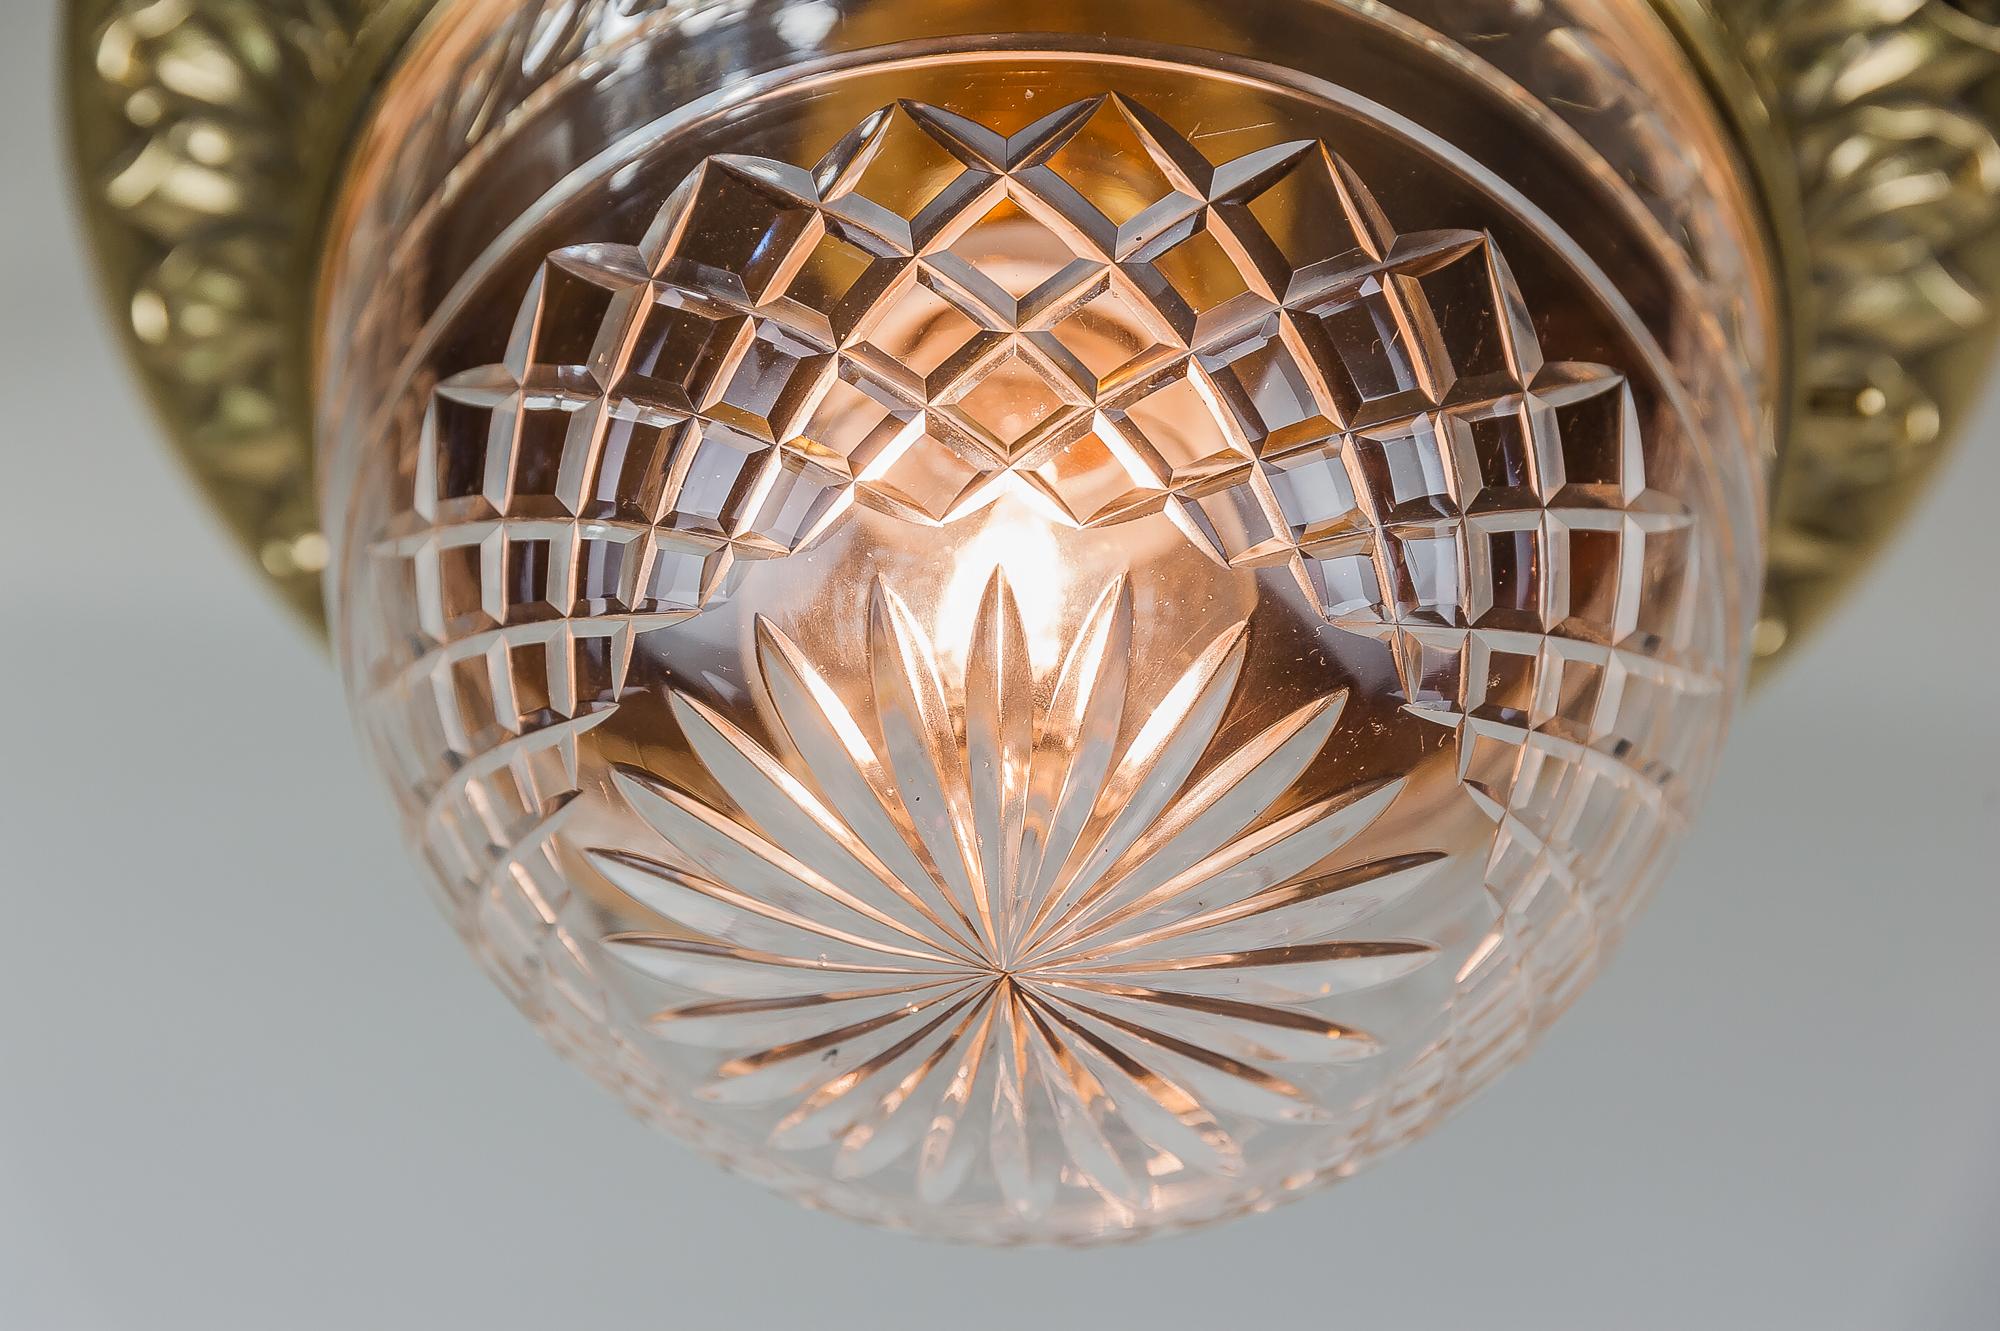 Solid Jugendstil Ceiling Lamp with Original Cut-Glass 1